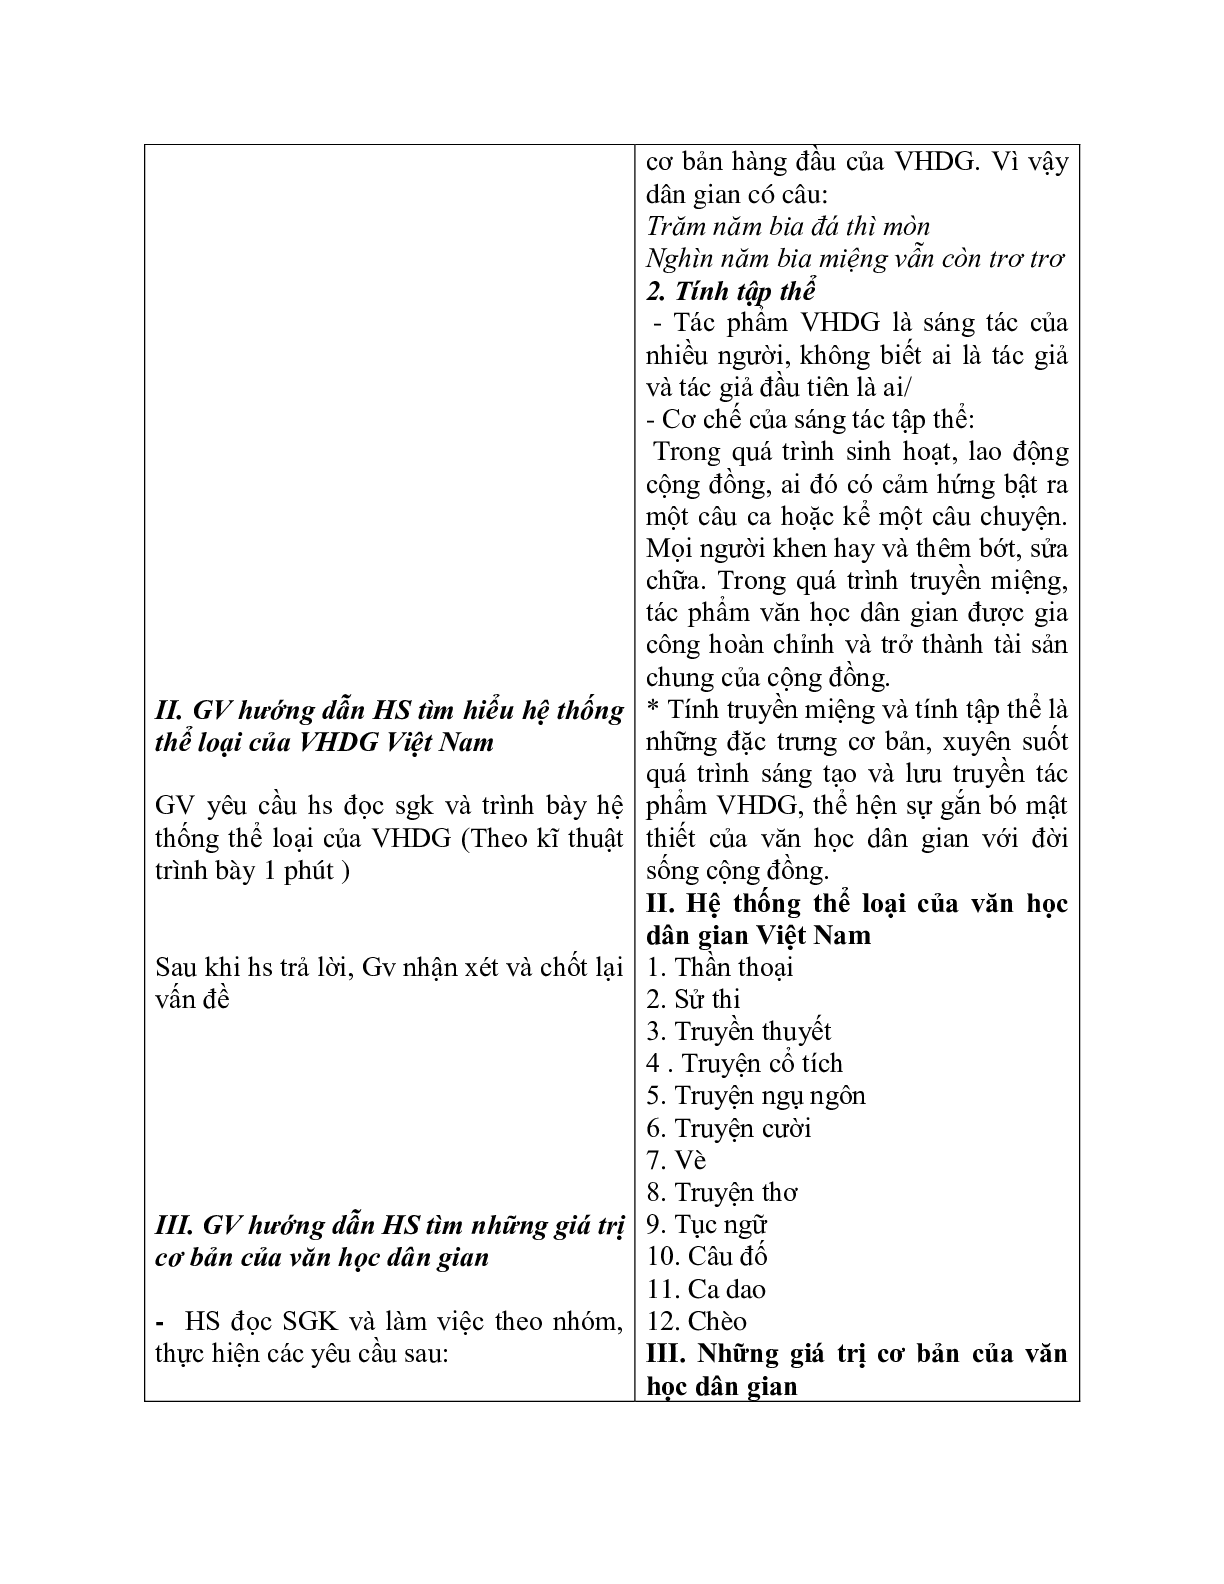 Giáo án ngữ văn lớp 10 Tiết 3, 4: Khái quát văn học dân gian Việt Nam (trang 3)